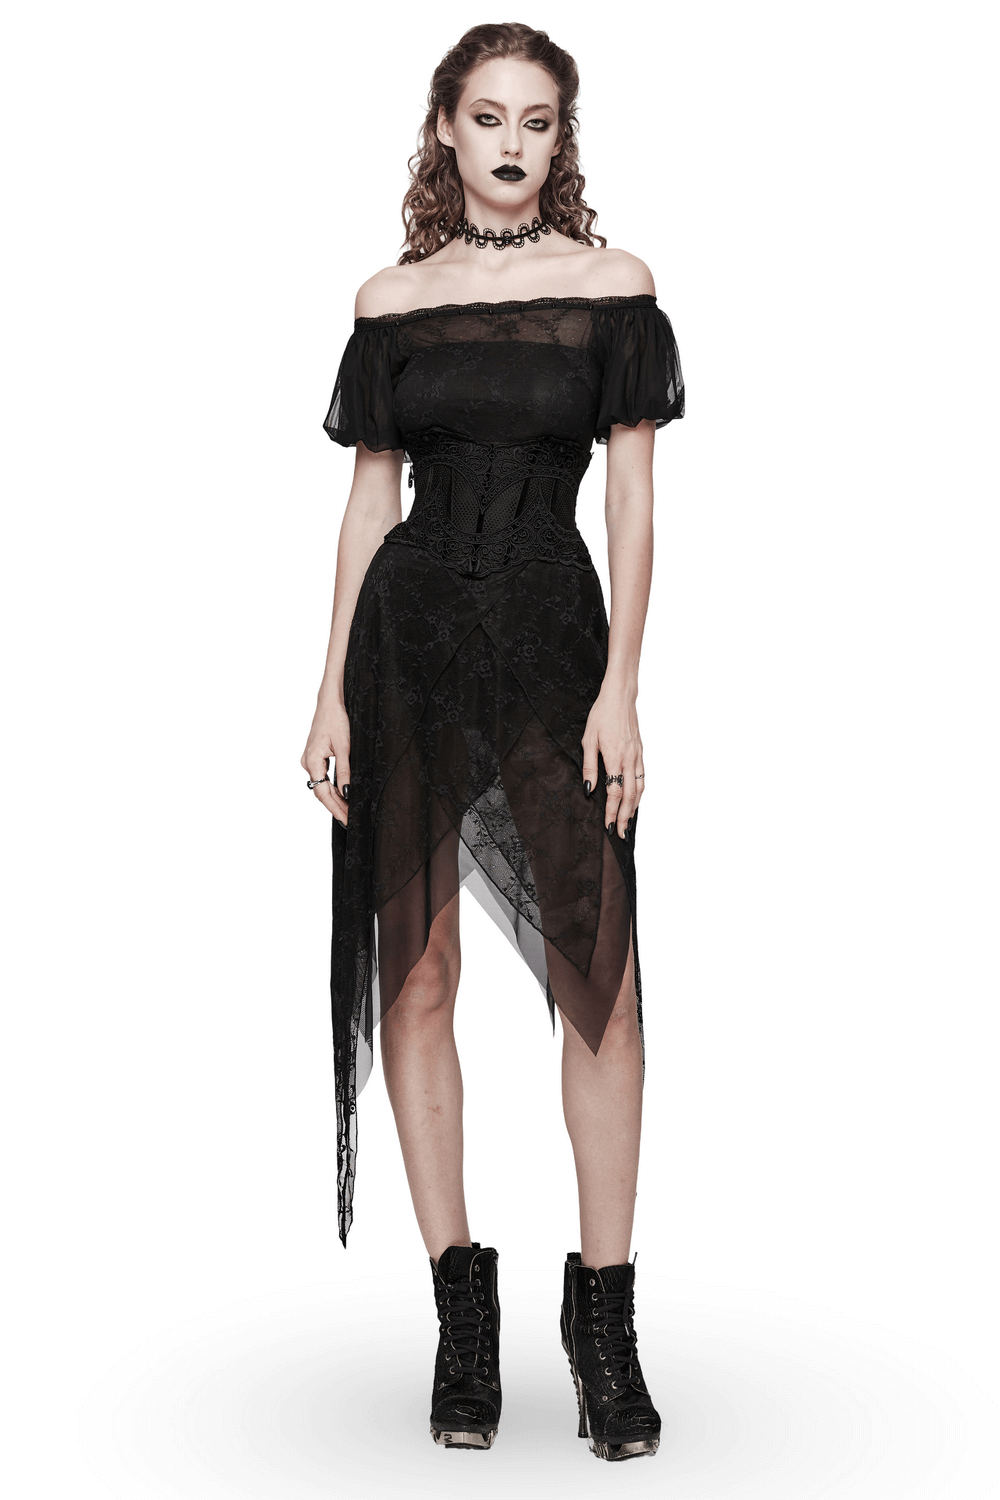 Black Lace Off-Shoulder Long Dress with Spike Detailing